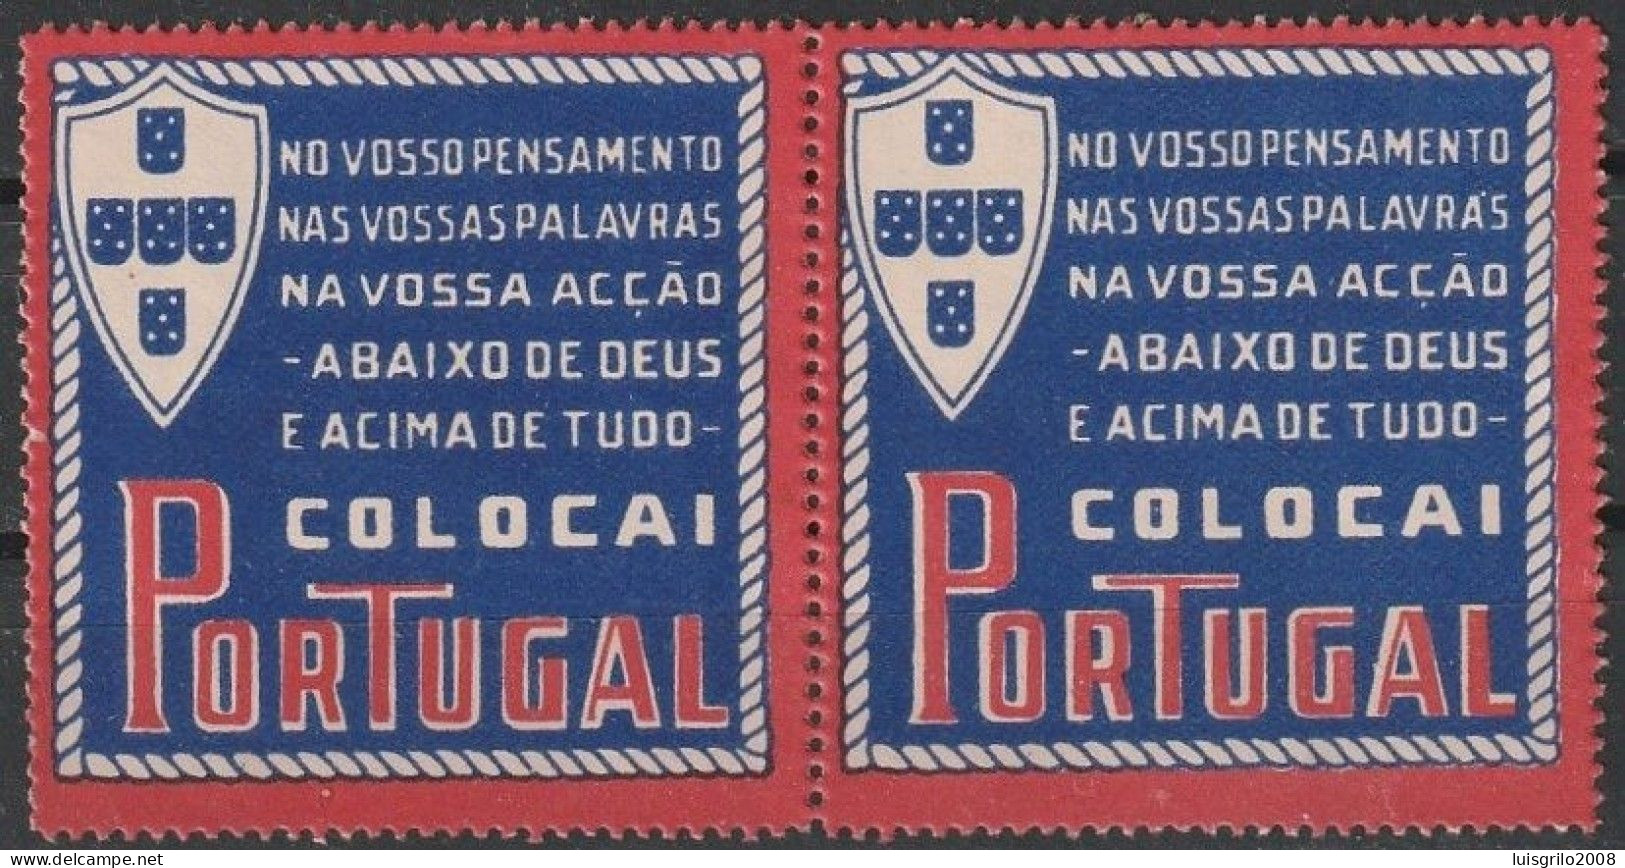 Vignettes, Portugal - Vinhetas De Propaganda Do Governo Do Estado Novo/ Salazar (1933>1974) -|- MNG No Gum - Local Post Stamps